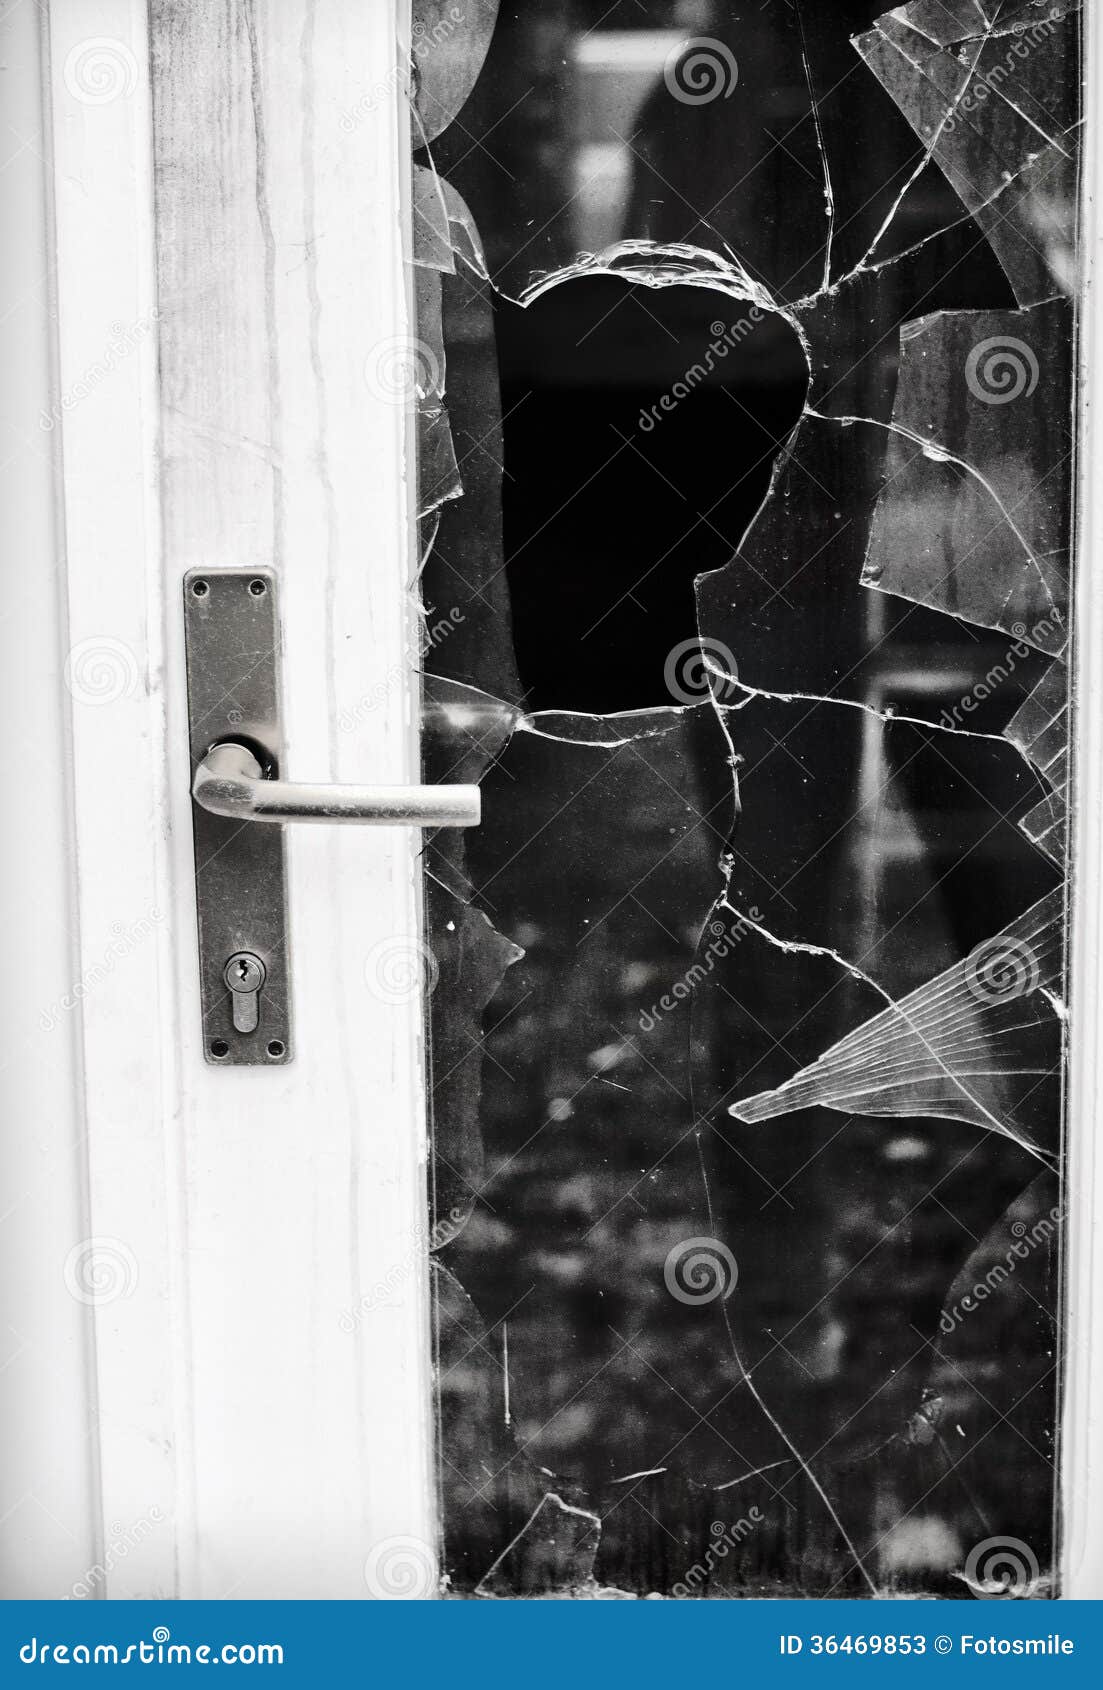 Разбили стекло на двери. Разбитая дверь. Разбитое стекло в двери. Сломанная стеклянная дверь. Разбитое окно.